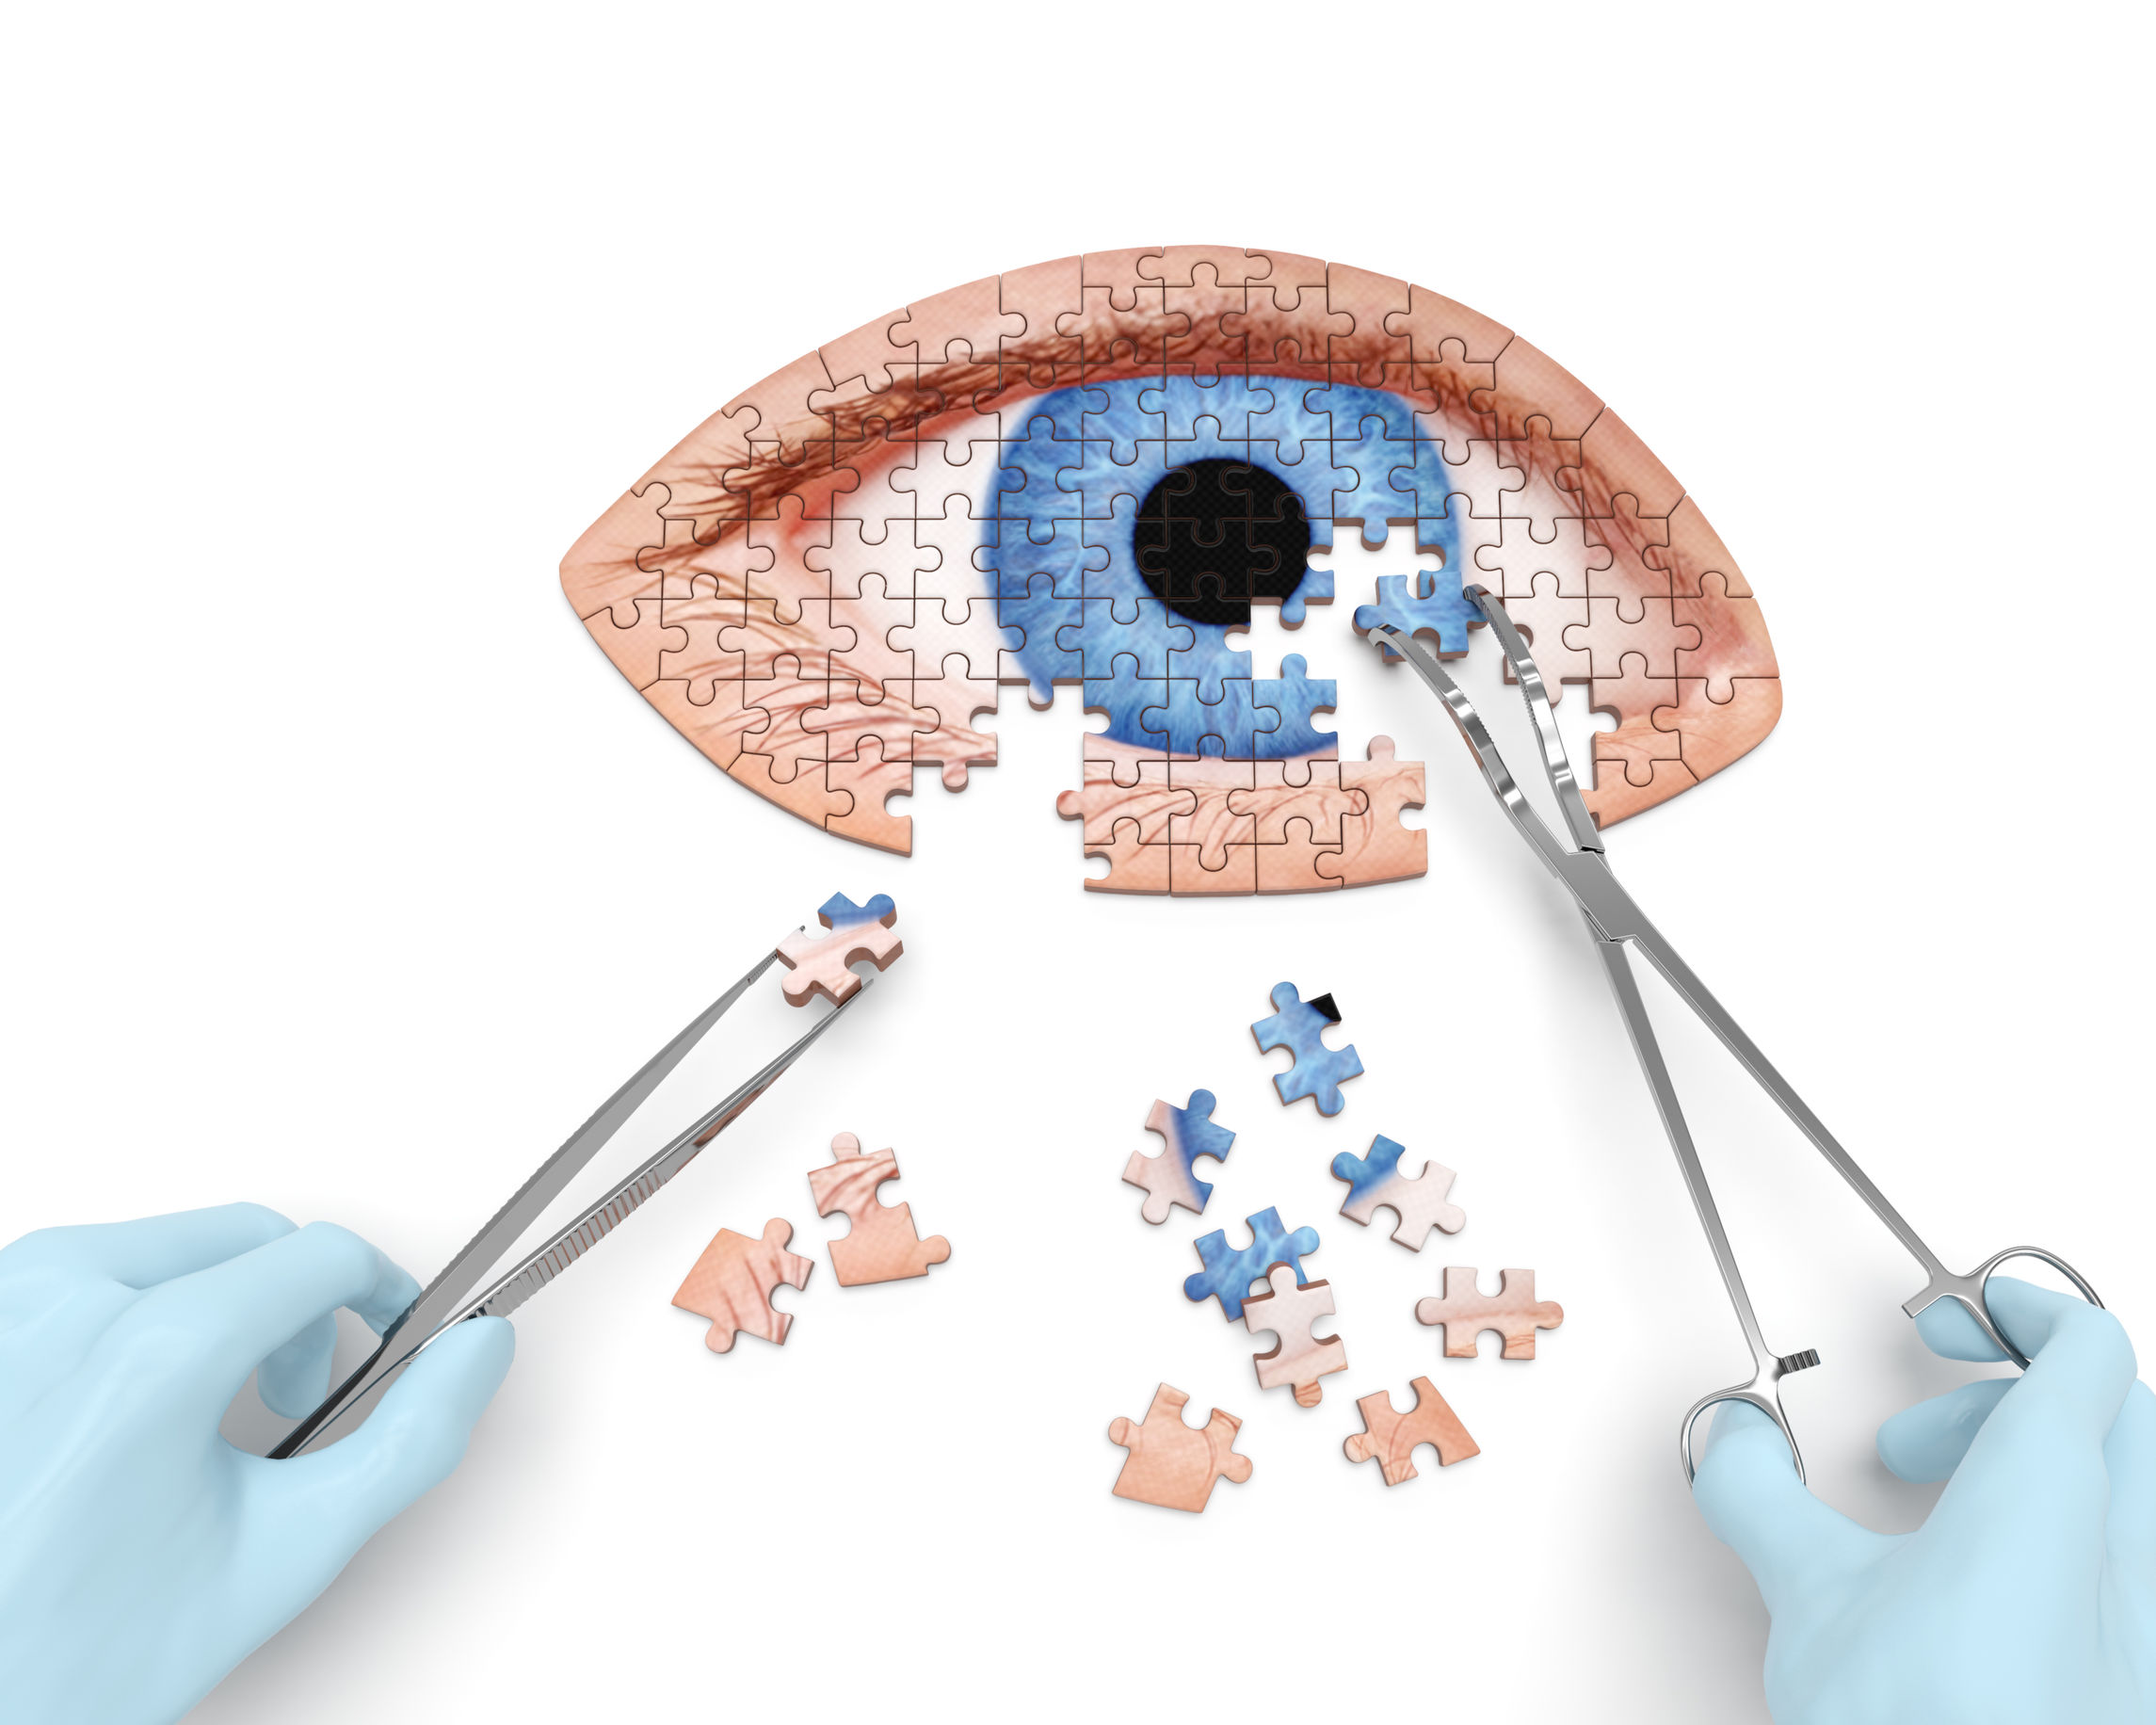 Eye operation